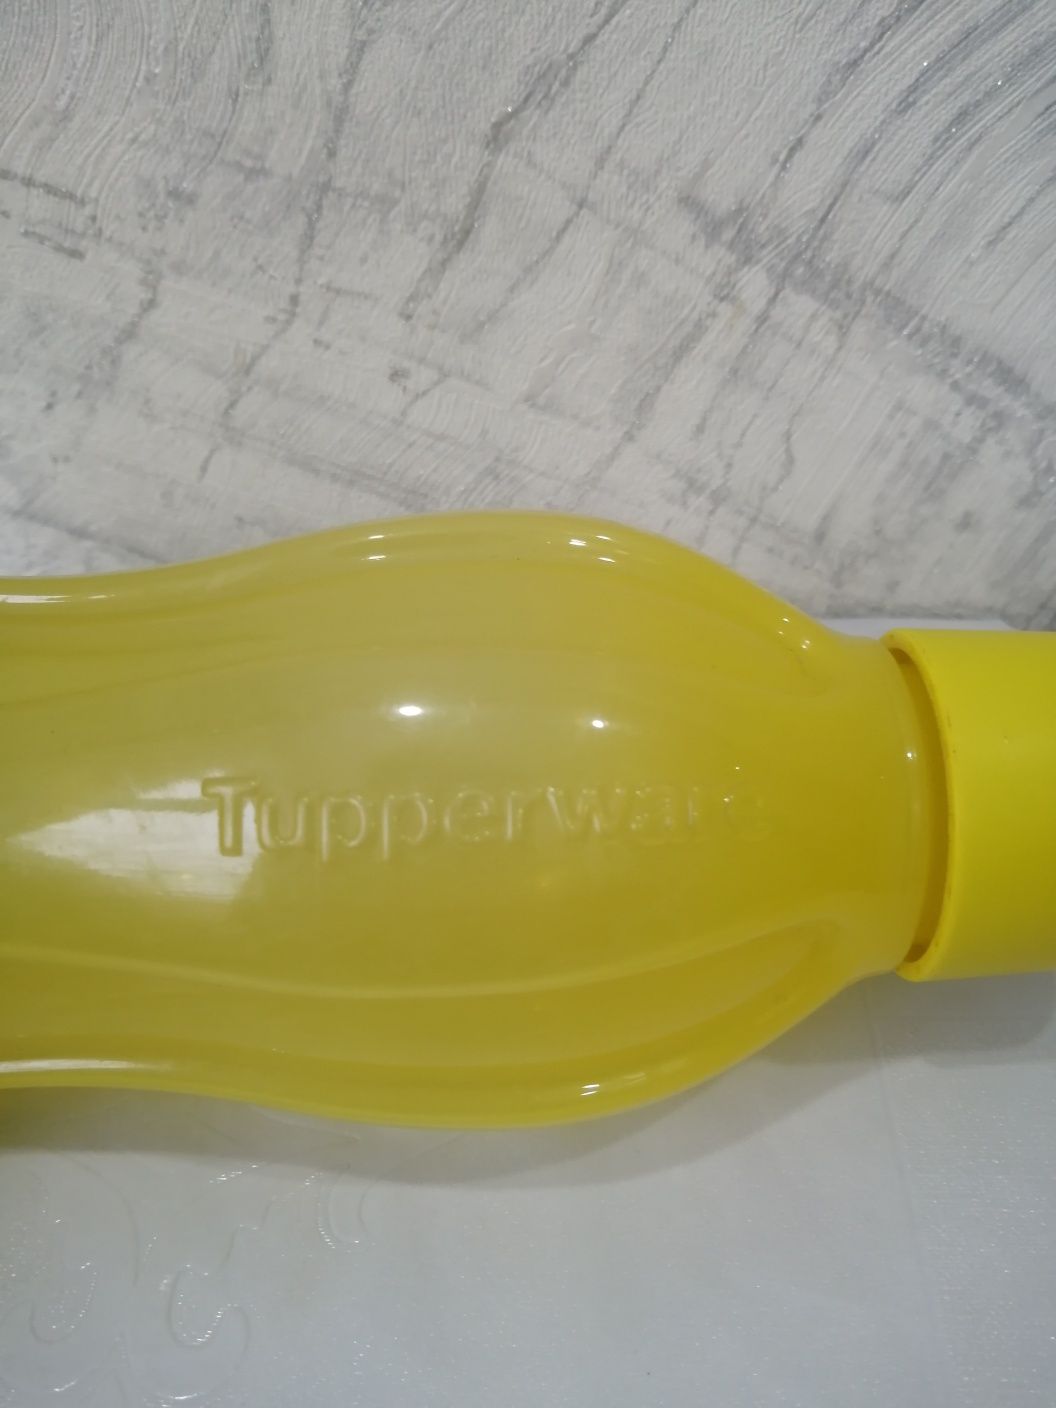 Бутылки от фирмы Tupperware